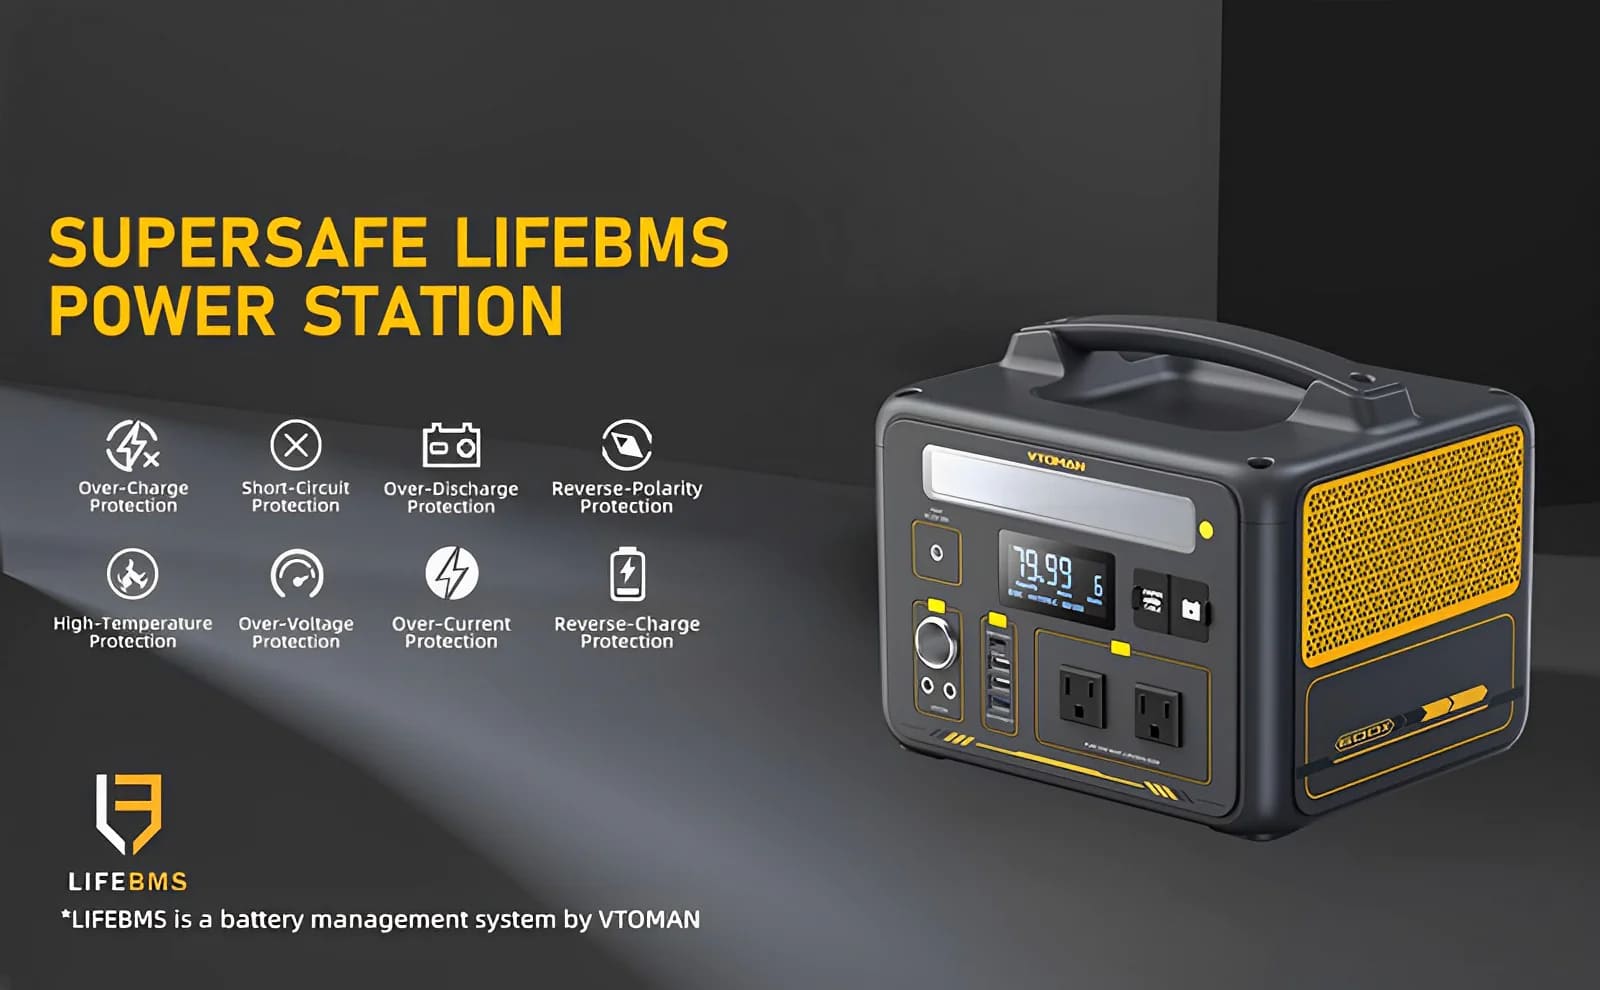 El generador de batería VTOMAN Jump 600X cuenta con un sistema de protección LIFEBMS súper seguro desarrollado por VTOMAN